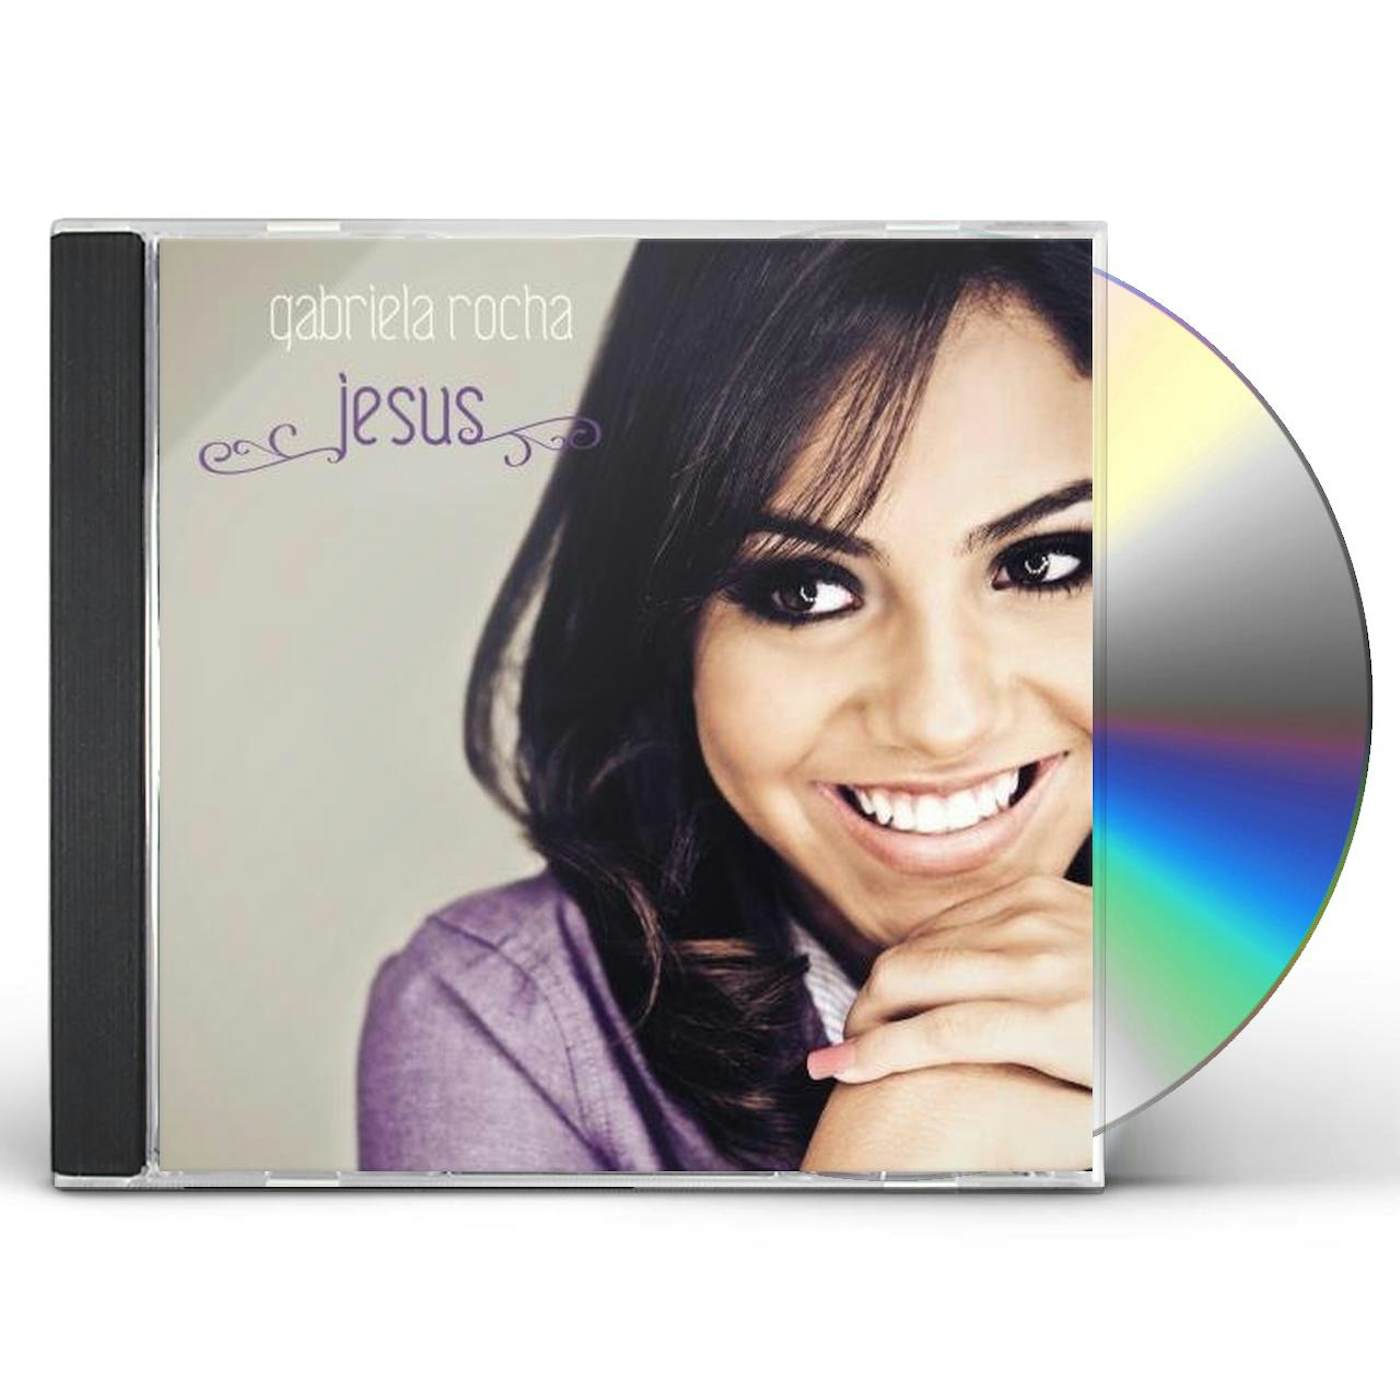 Resgate lança coletânea pela Sony Music - Pretérito Imperfeito, Mais que  Perfeito. Ouvimos e comentamos